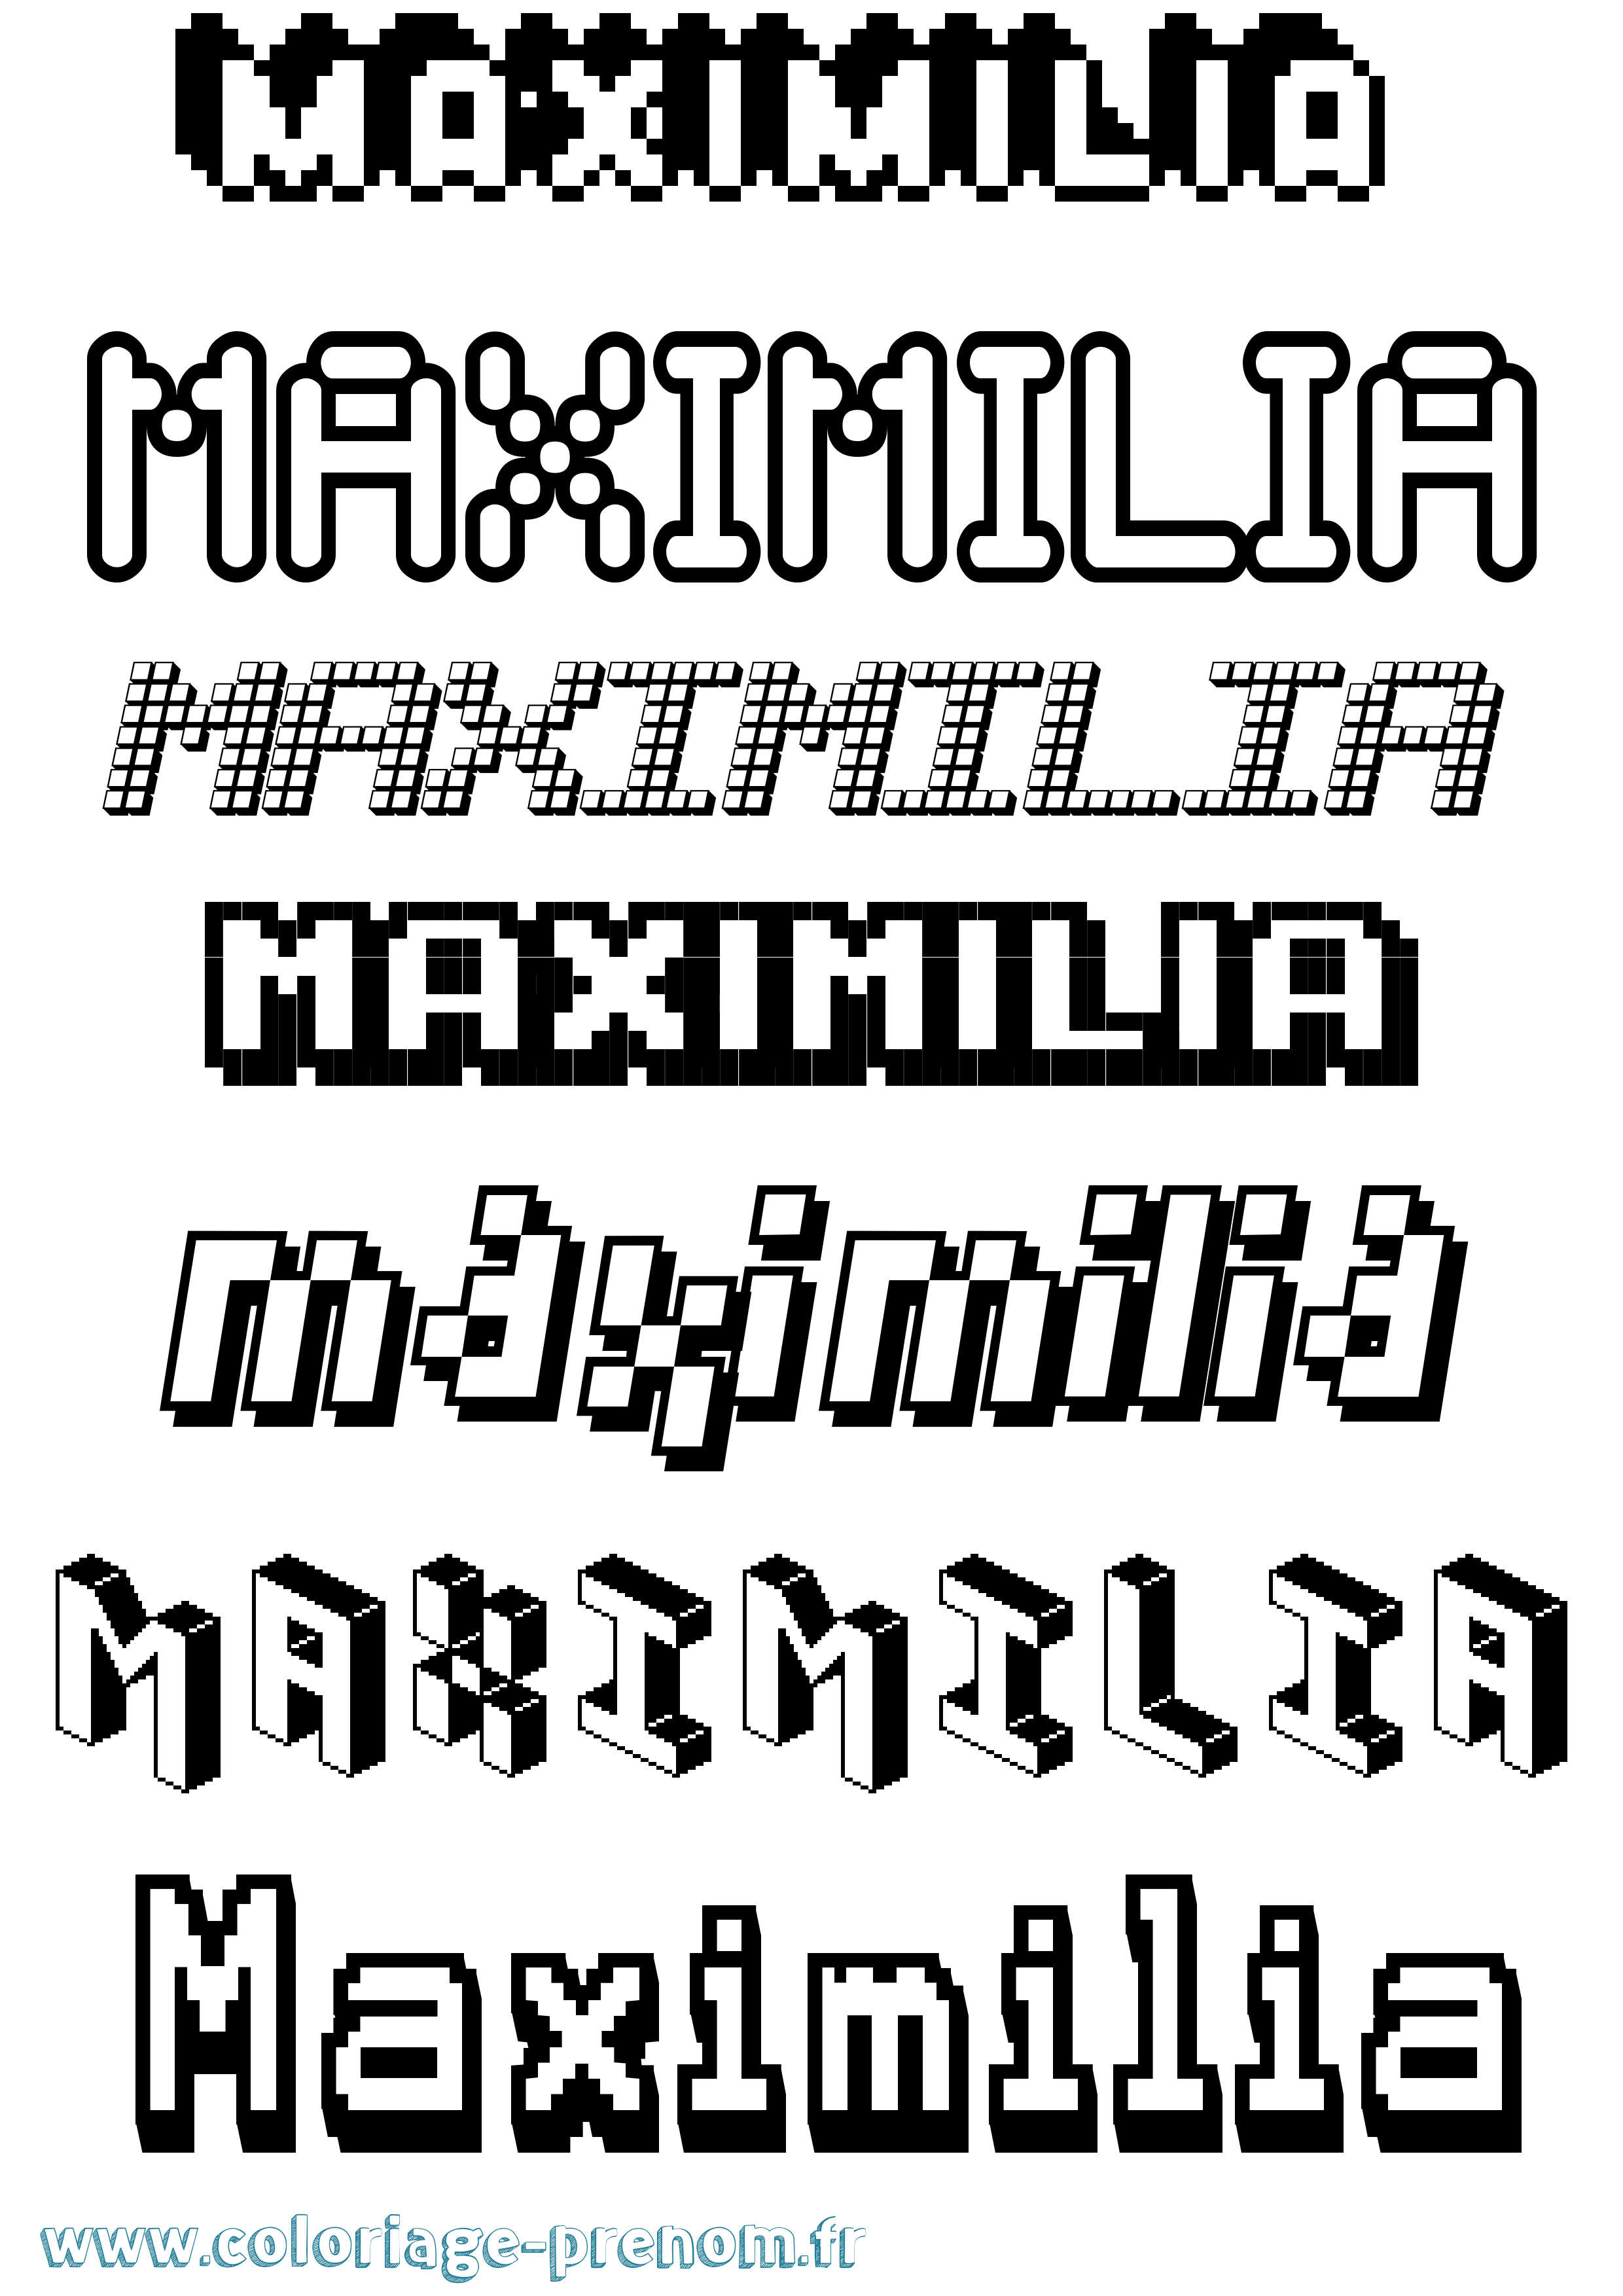 Coloriage prénom Maximilia Pixel